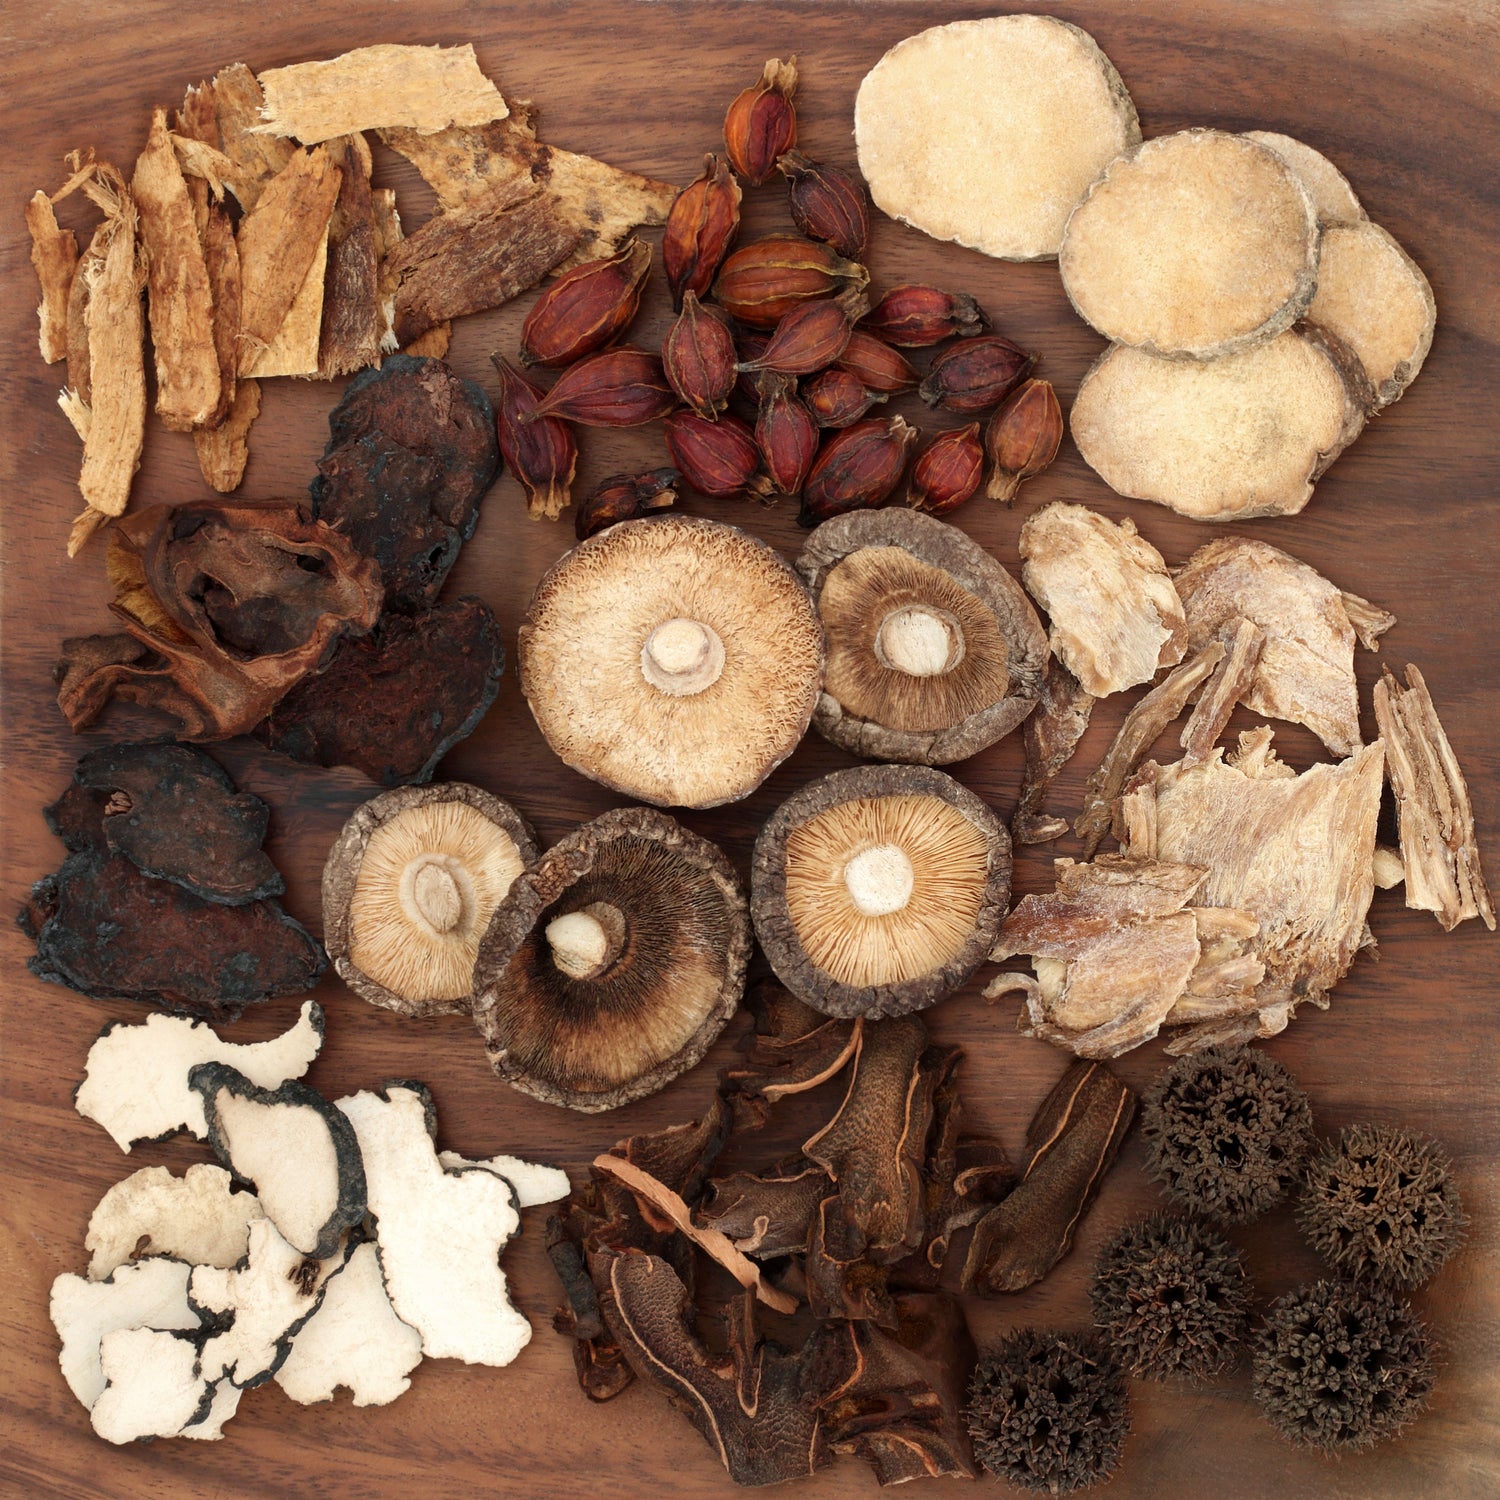 Mushroom Species